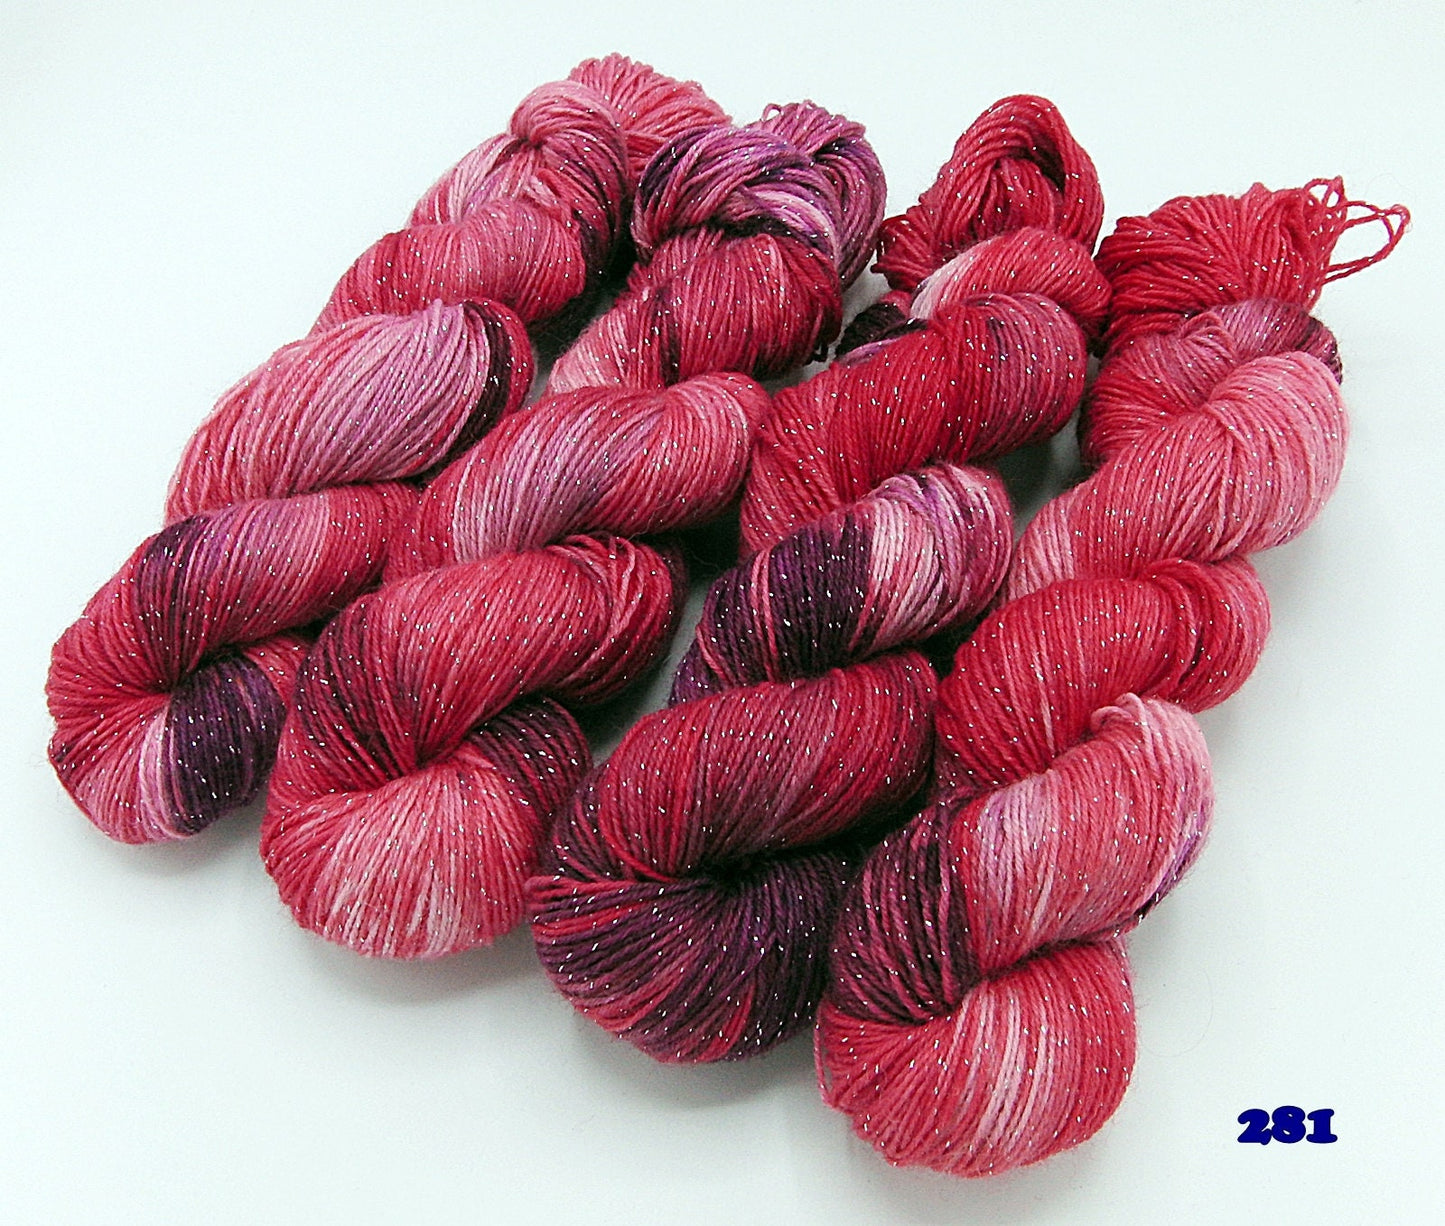 Sockenwolle *Glitzer* handgefärbt  71 Wolle, 24 Polyamid  5 Polyester  100 g   Nr. 281